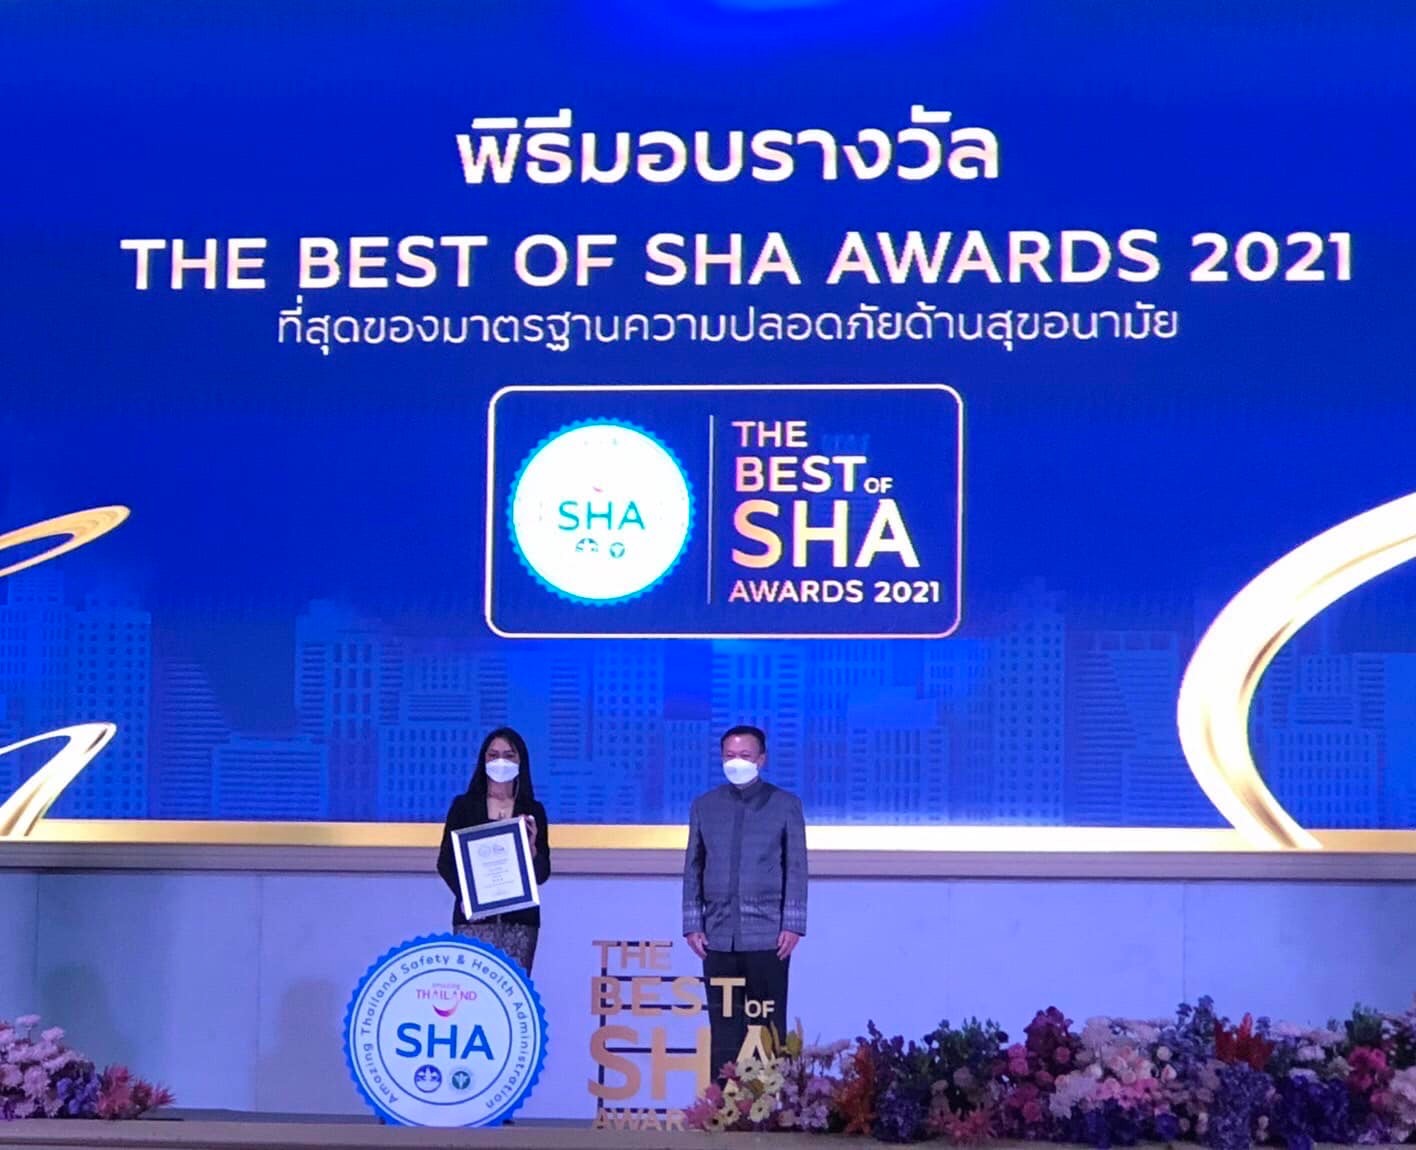 สวนนงนุชพัทยา ได้รับรางวัล The Best of SHA 3 ดาว ประเภทนันทนาการและสถานที่ท่องเที่ยว โดย การท่องเที่ยวแห่งประเทศไทย